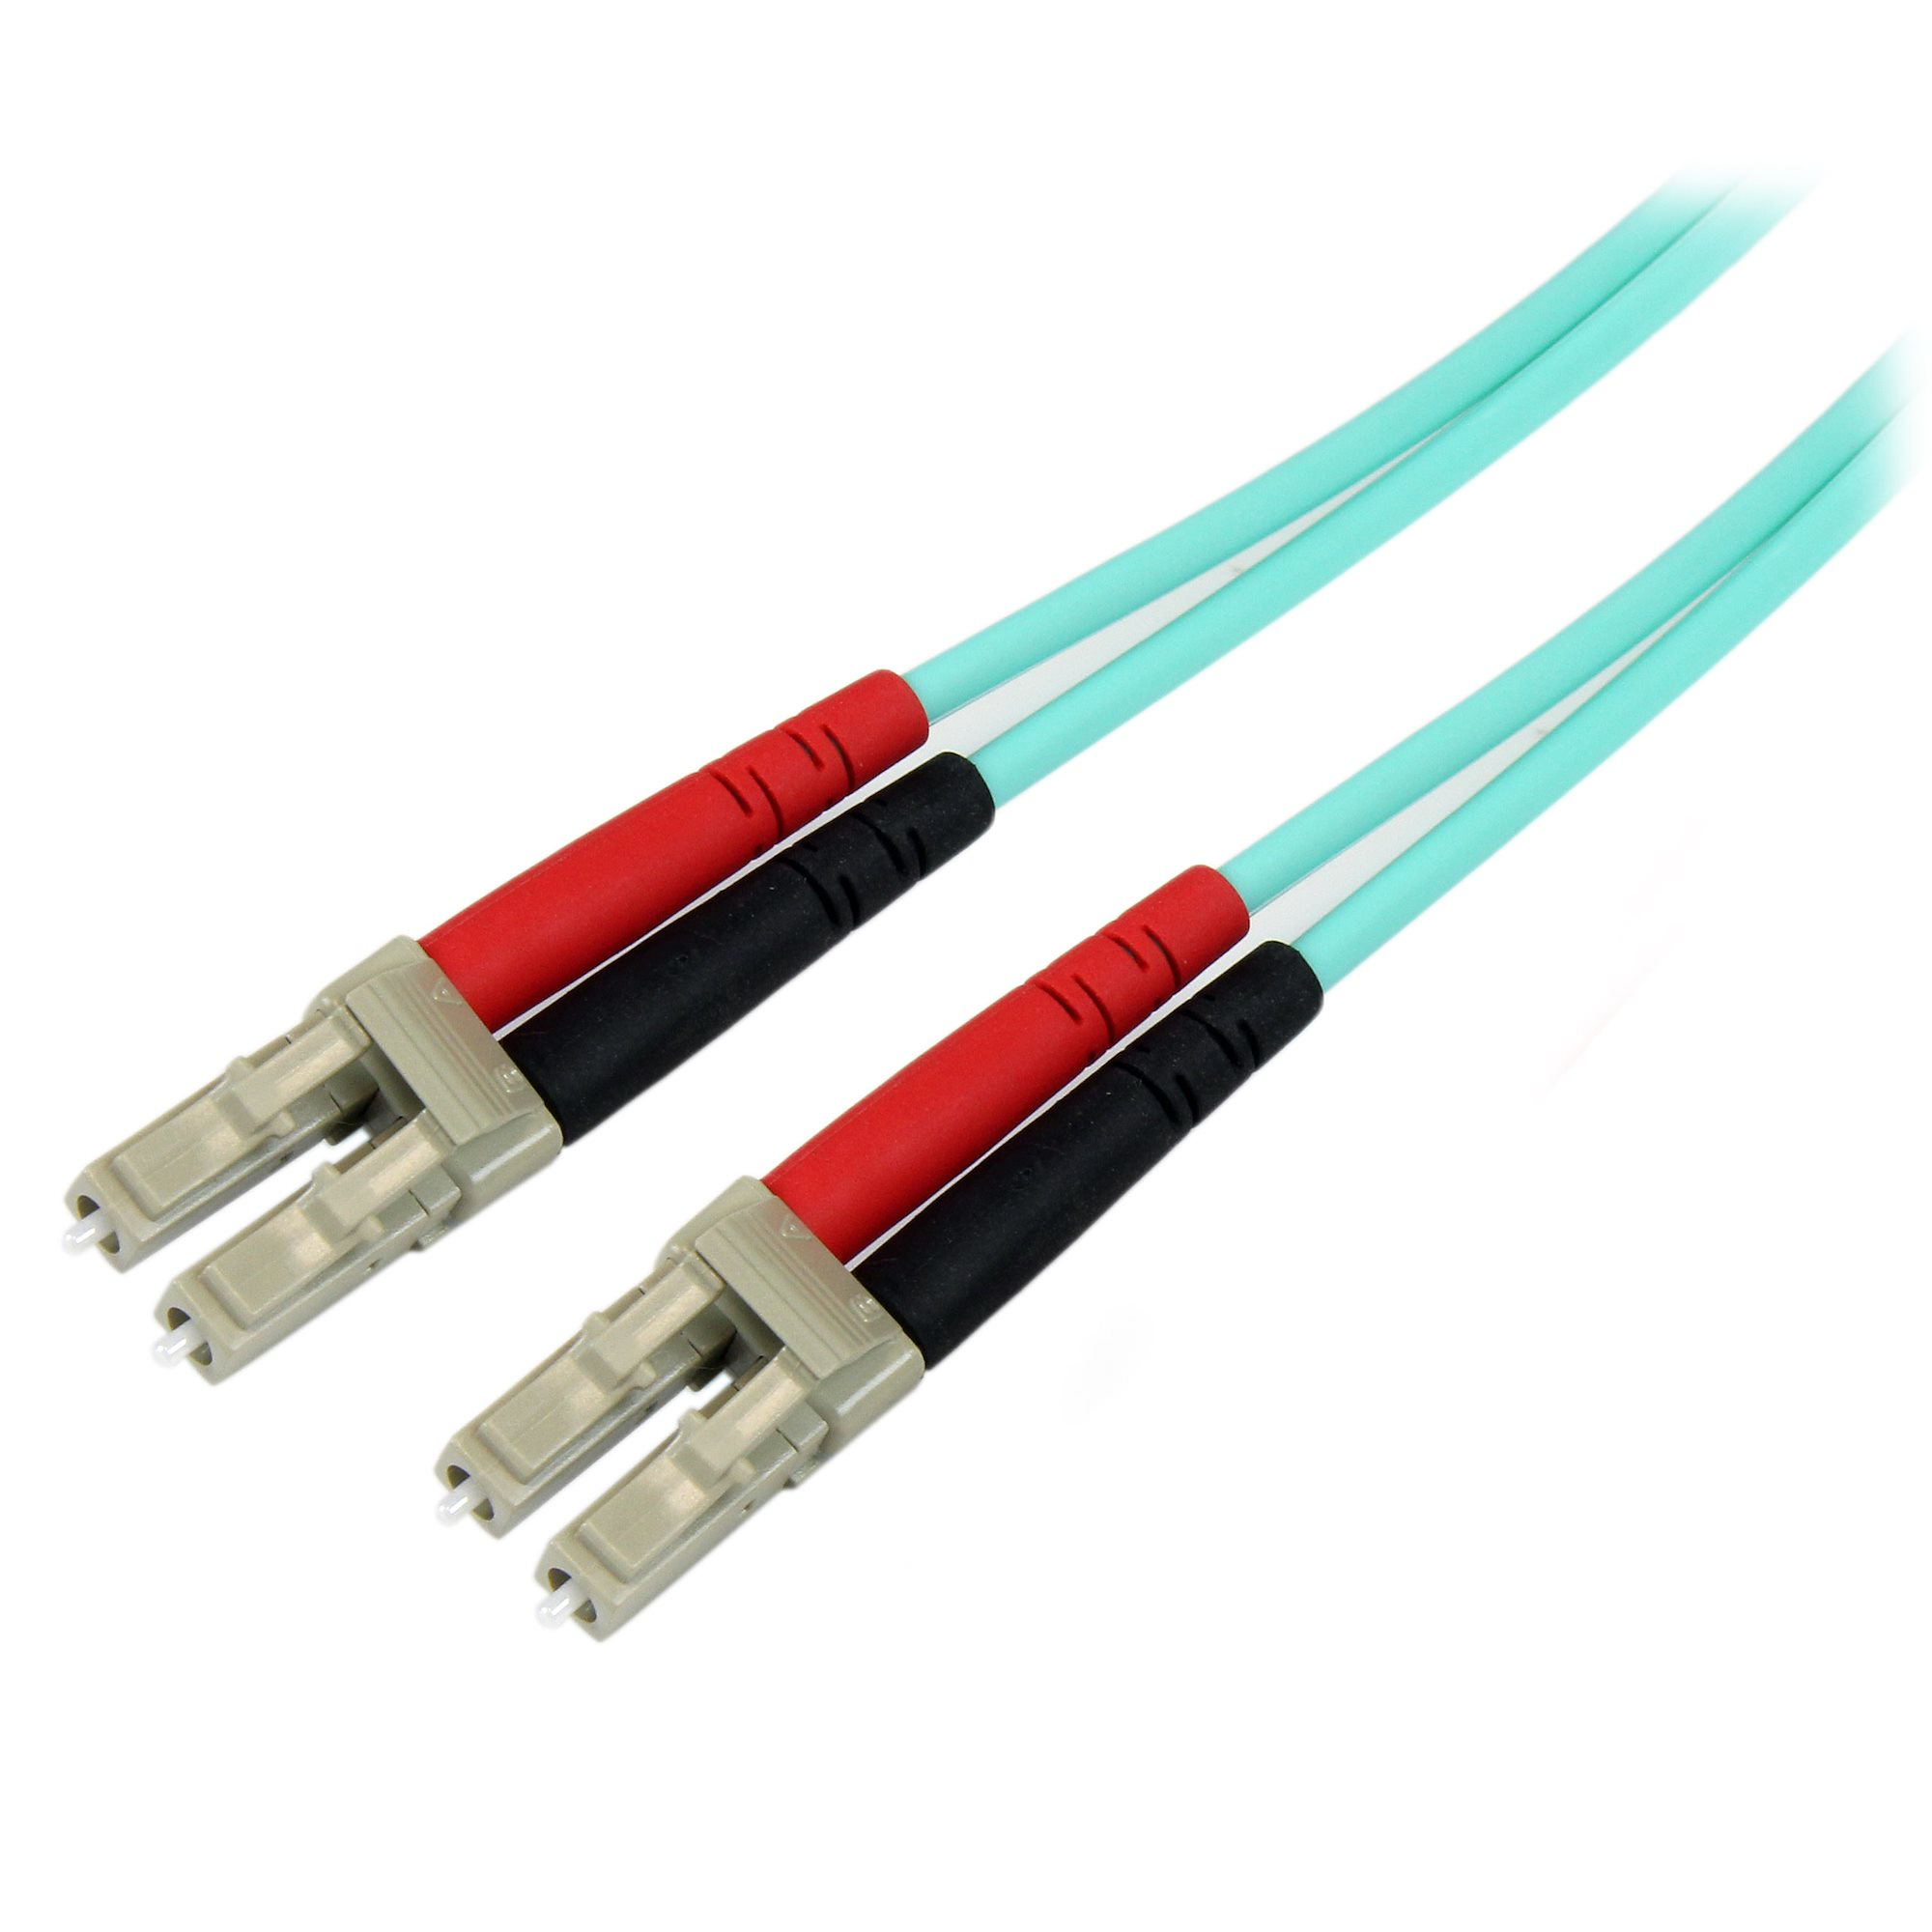 StarTech.com Fiber Optic Cable - 10 Gb Aqua - Multimode Duplex 50/125 - LSZH - LC/LC - 10 m~10m (30ft) LC/UPC to LC/UPC OM3 Multimode Fiber Optic Cable, Full Duplex 50/125µm Zipcord Fiber, 100G Networks, LOMMF/VCSEL, 